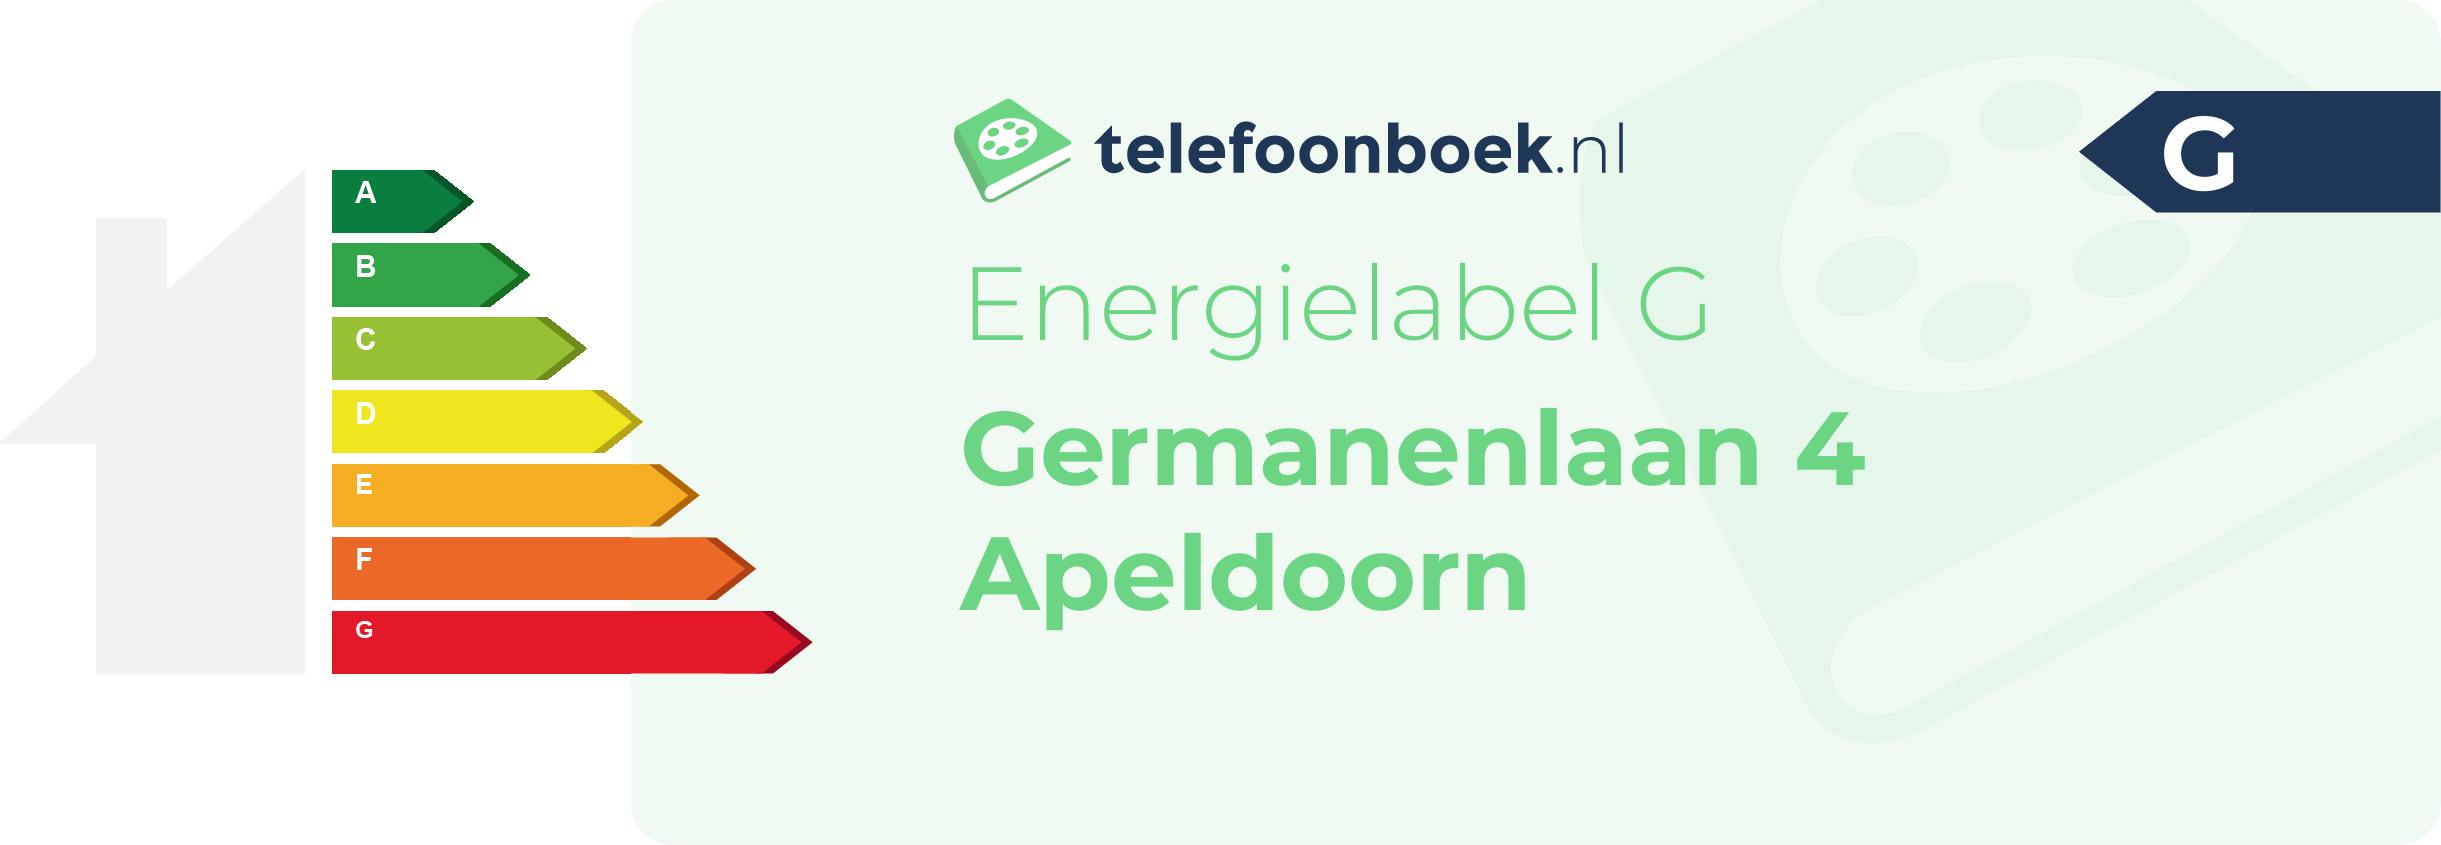 Energielabel Germanenlaan 4 Apeldoorn